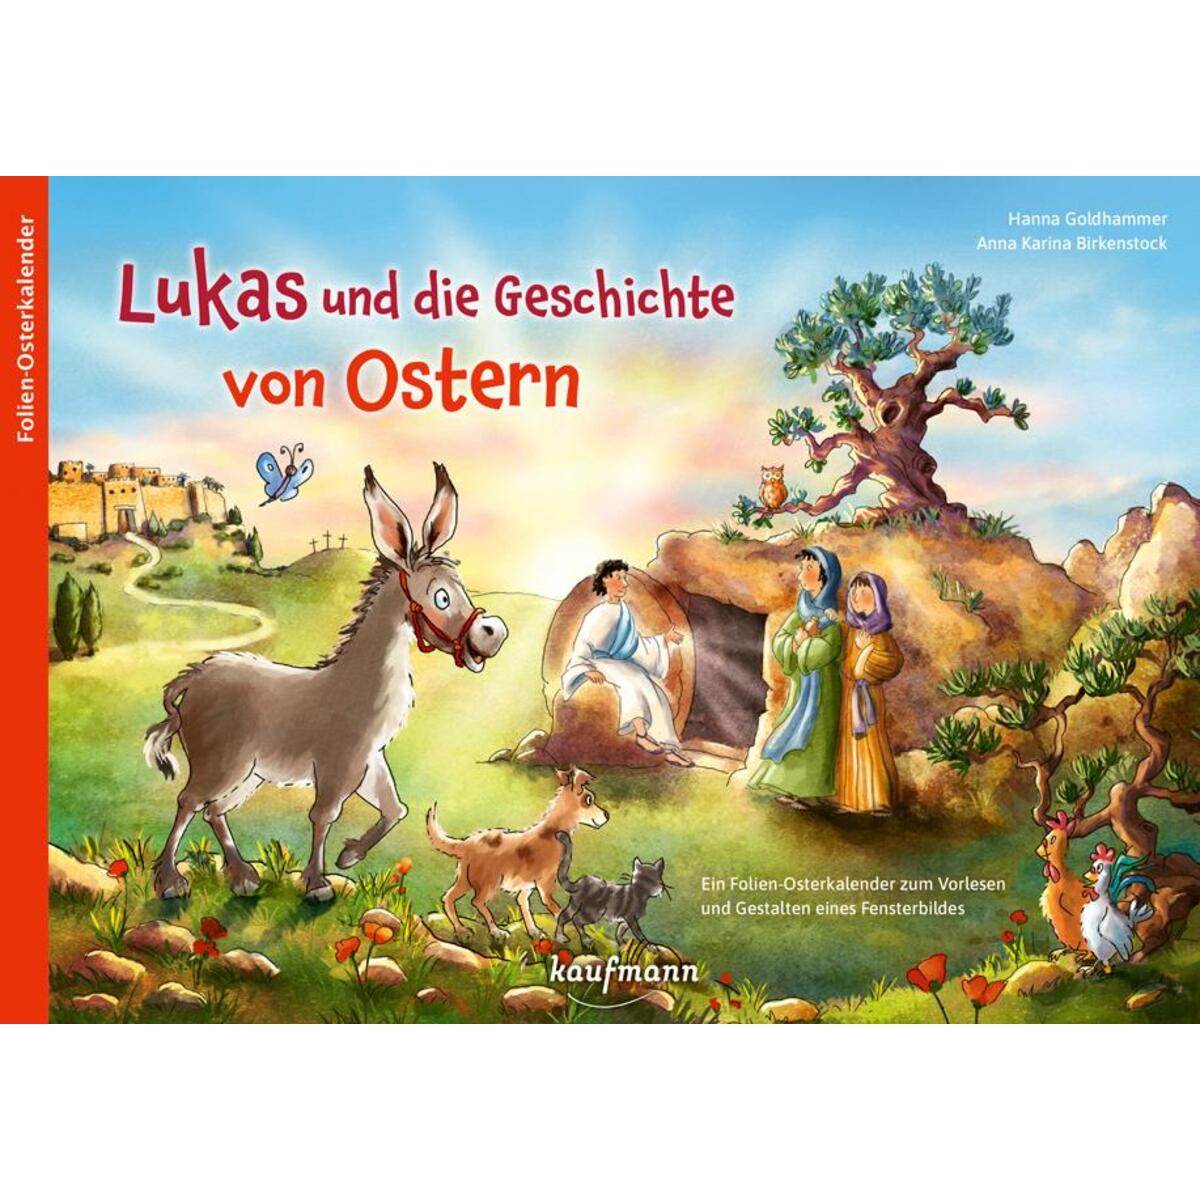 Lukas und die Geschichte von Ostern von Ernst Kaufmann Verlag GmbH